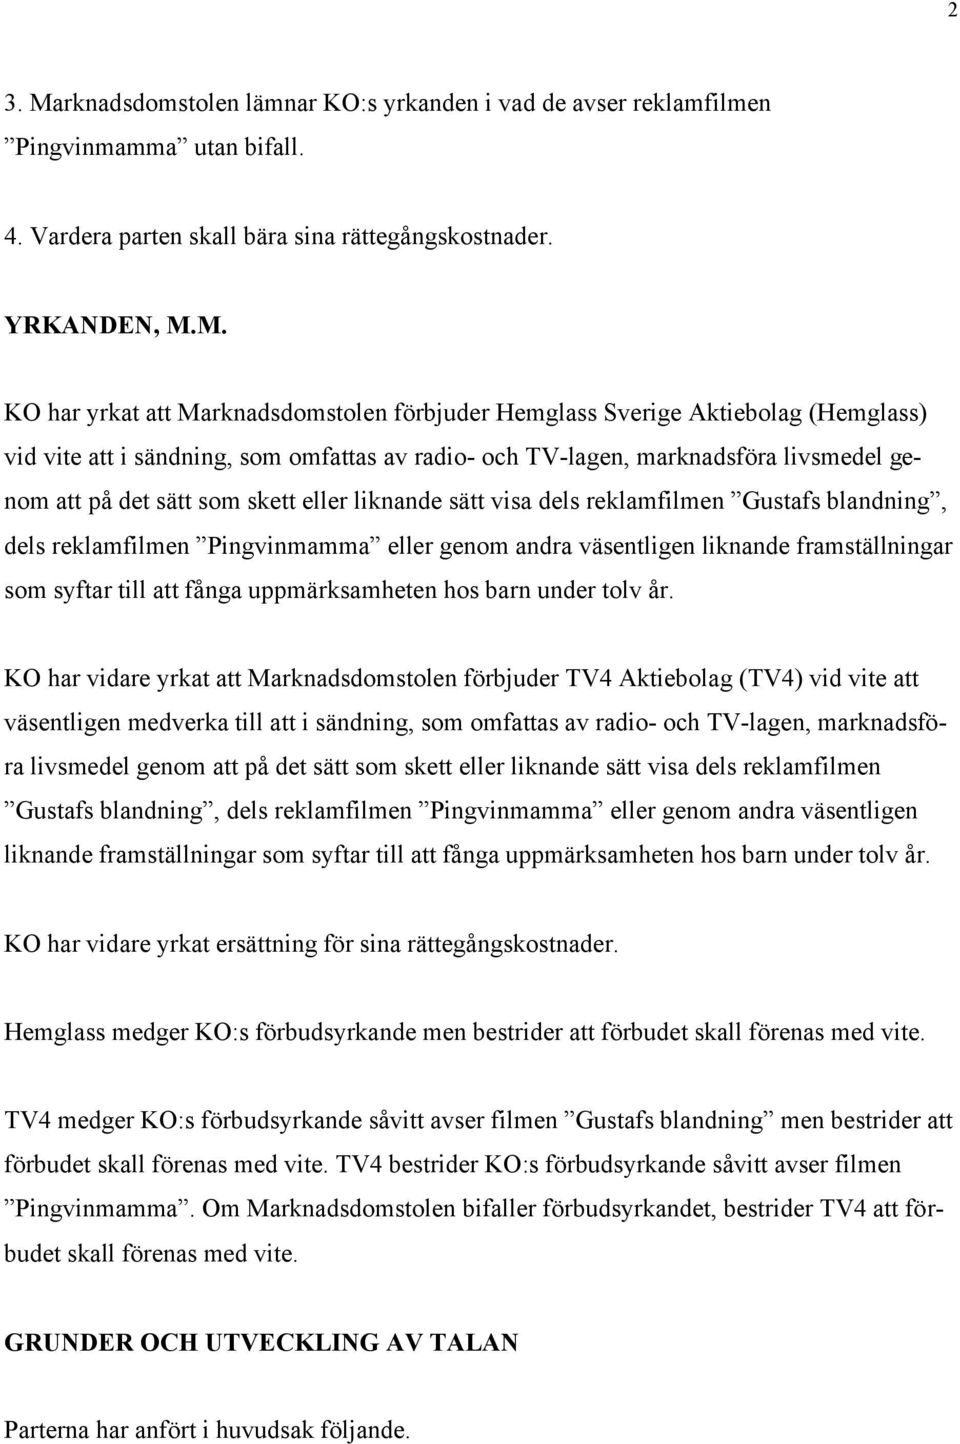 M. KO har yrkat att Marknadsdomstolen förbjuder Hemglass Sverige Aktiebolag (Hemglass) vid vite att i sändning, som omfattas av radio- och TV-lagen, marknadsföra livsmedel genom att på det sätt som